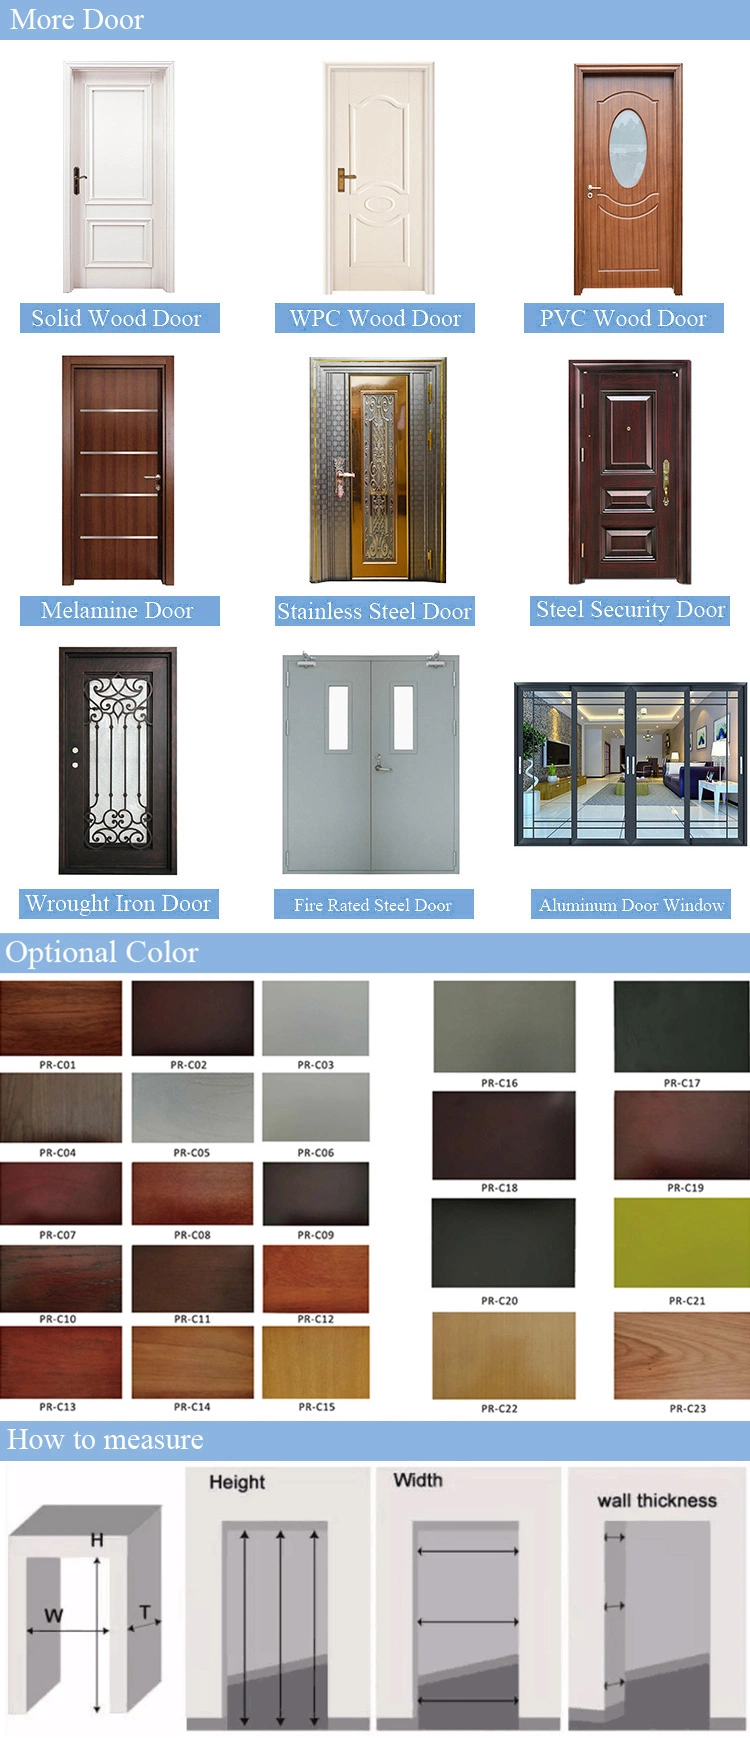 Prima Factory Direct Cheap Interior Doors Most Favorable French Doors Interior Modern Interior Bedroom Doors